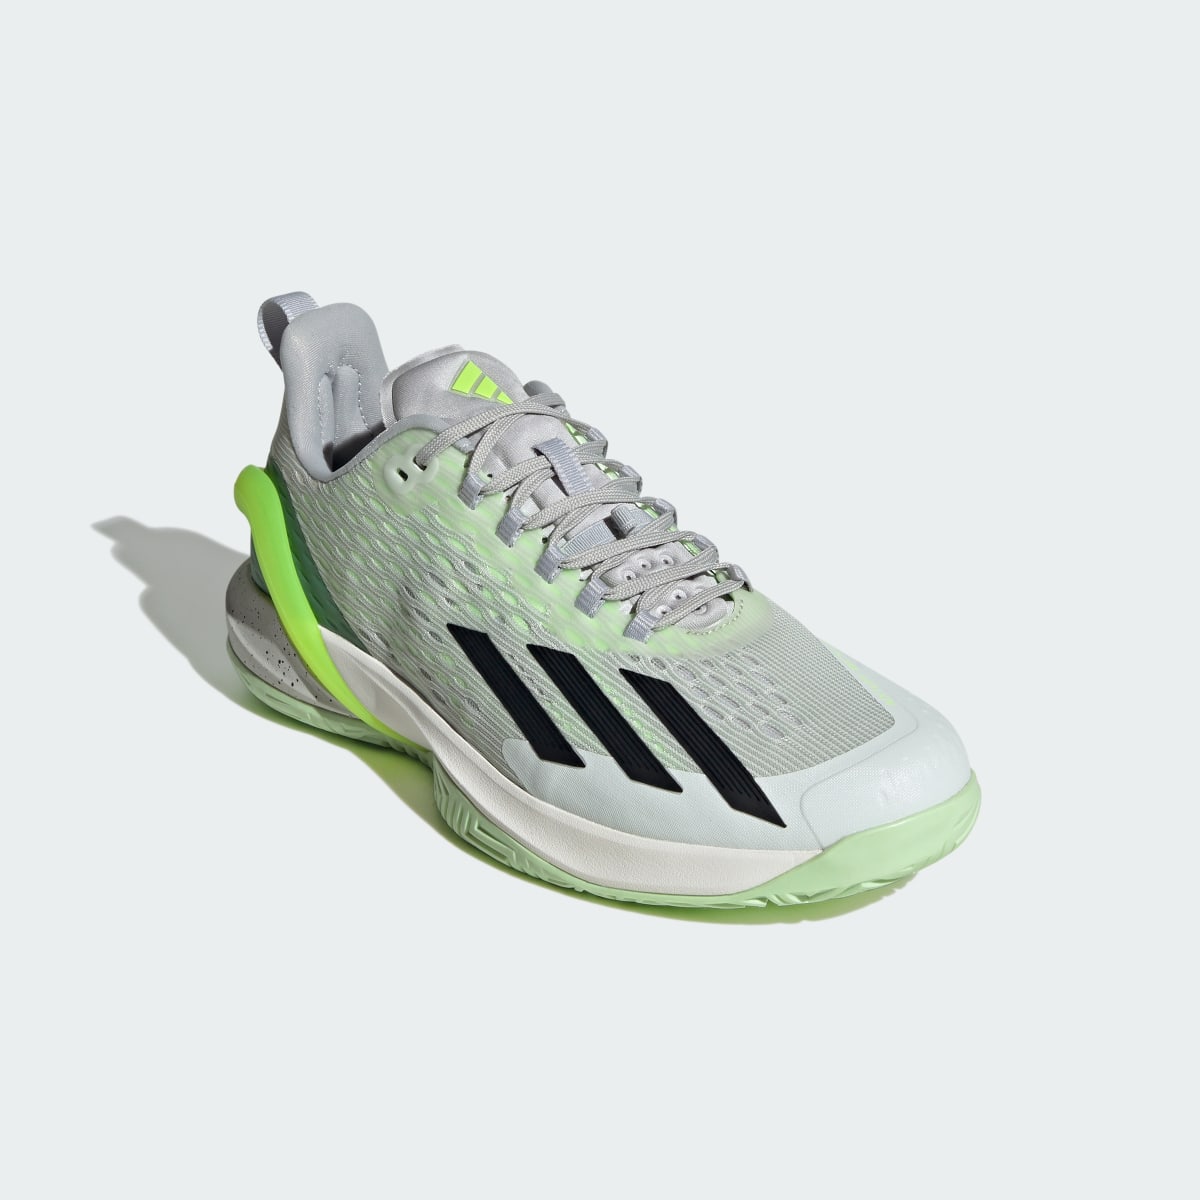 Adidas adizero Cybersonic Tennis Shoes. 5